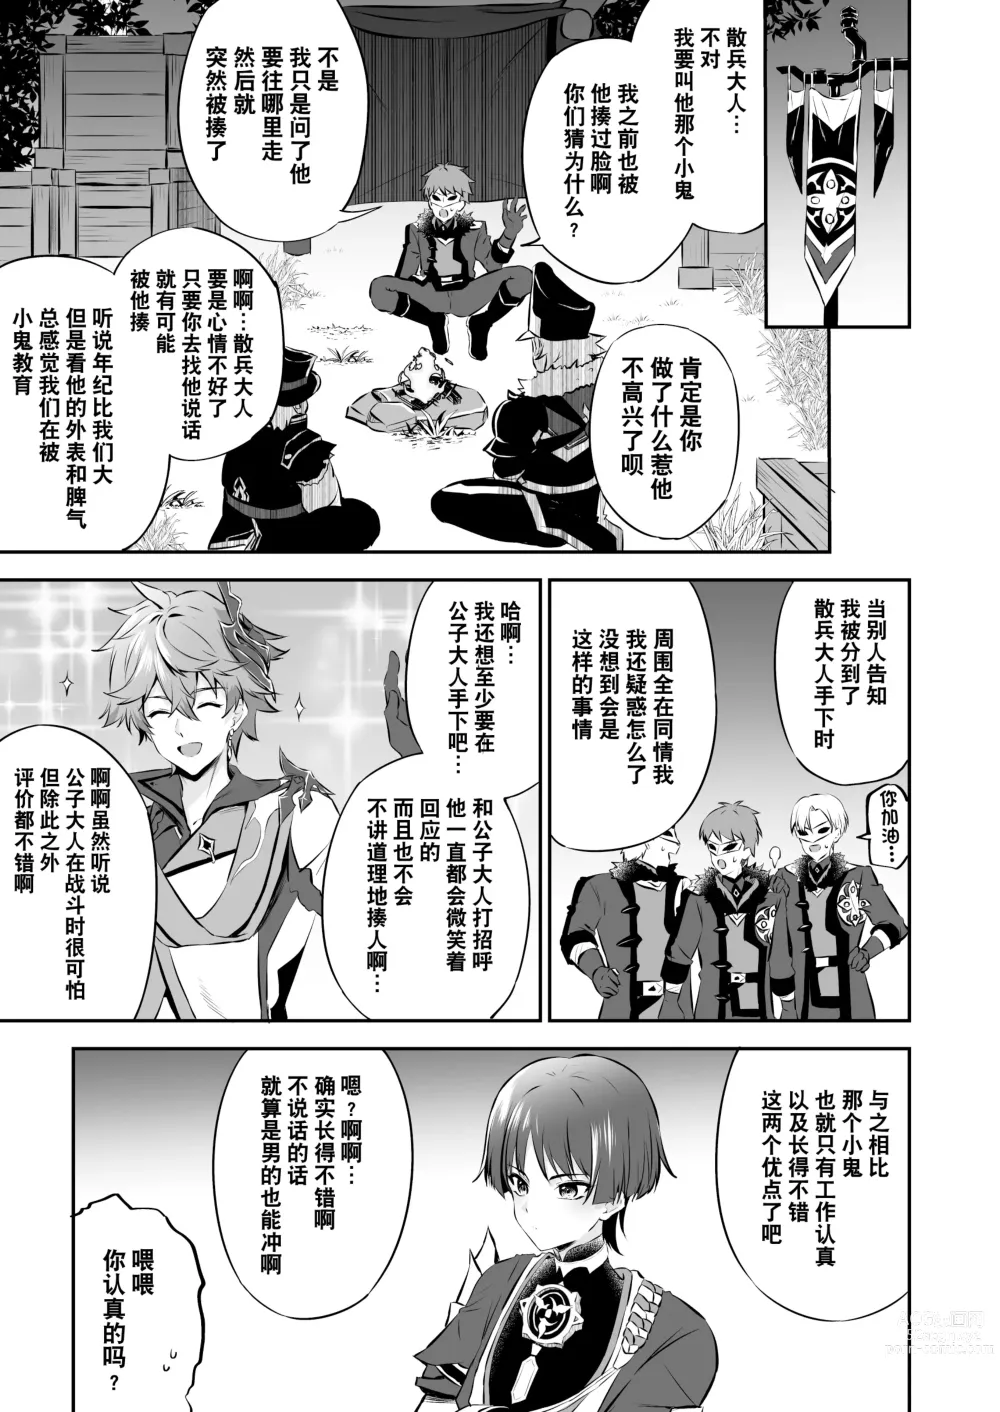 Page 6 of doujinshi  散兵大人哪怕是因为药物兴奋也不可能任由愚人众肆意摆布的吧